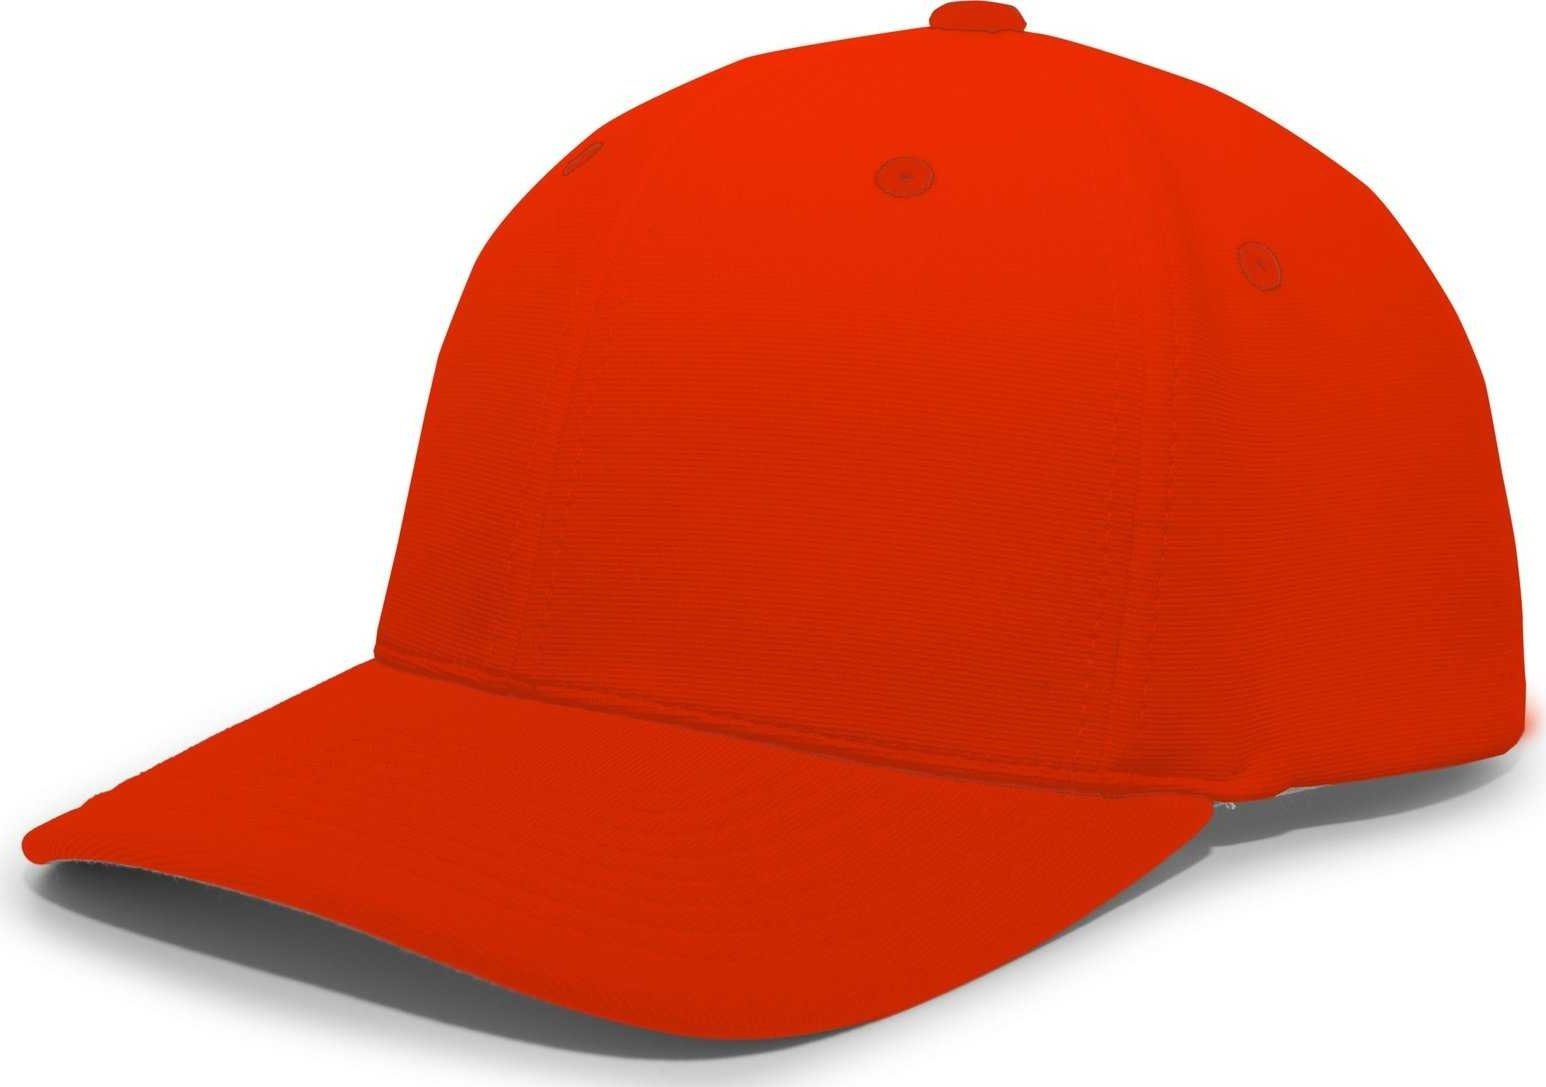 Pacific Headwear 498F M2 Performance Flexfit Cap - Orange - HIT a Double